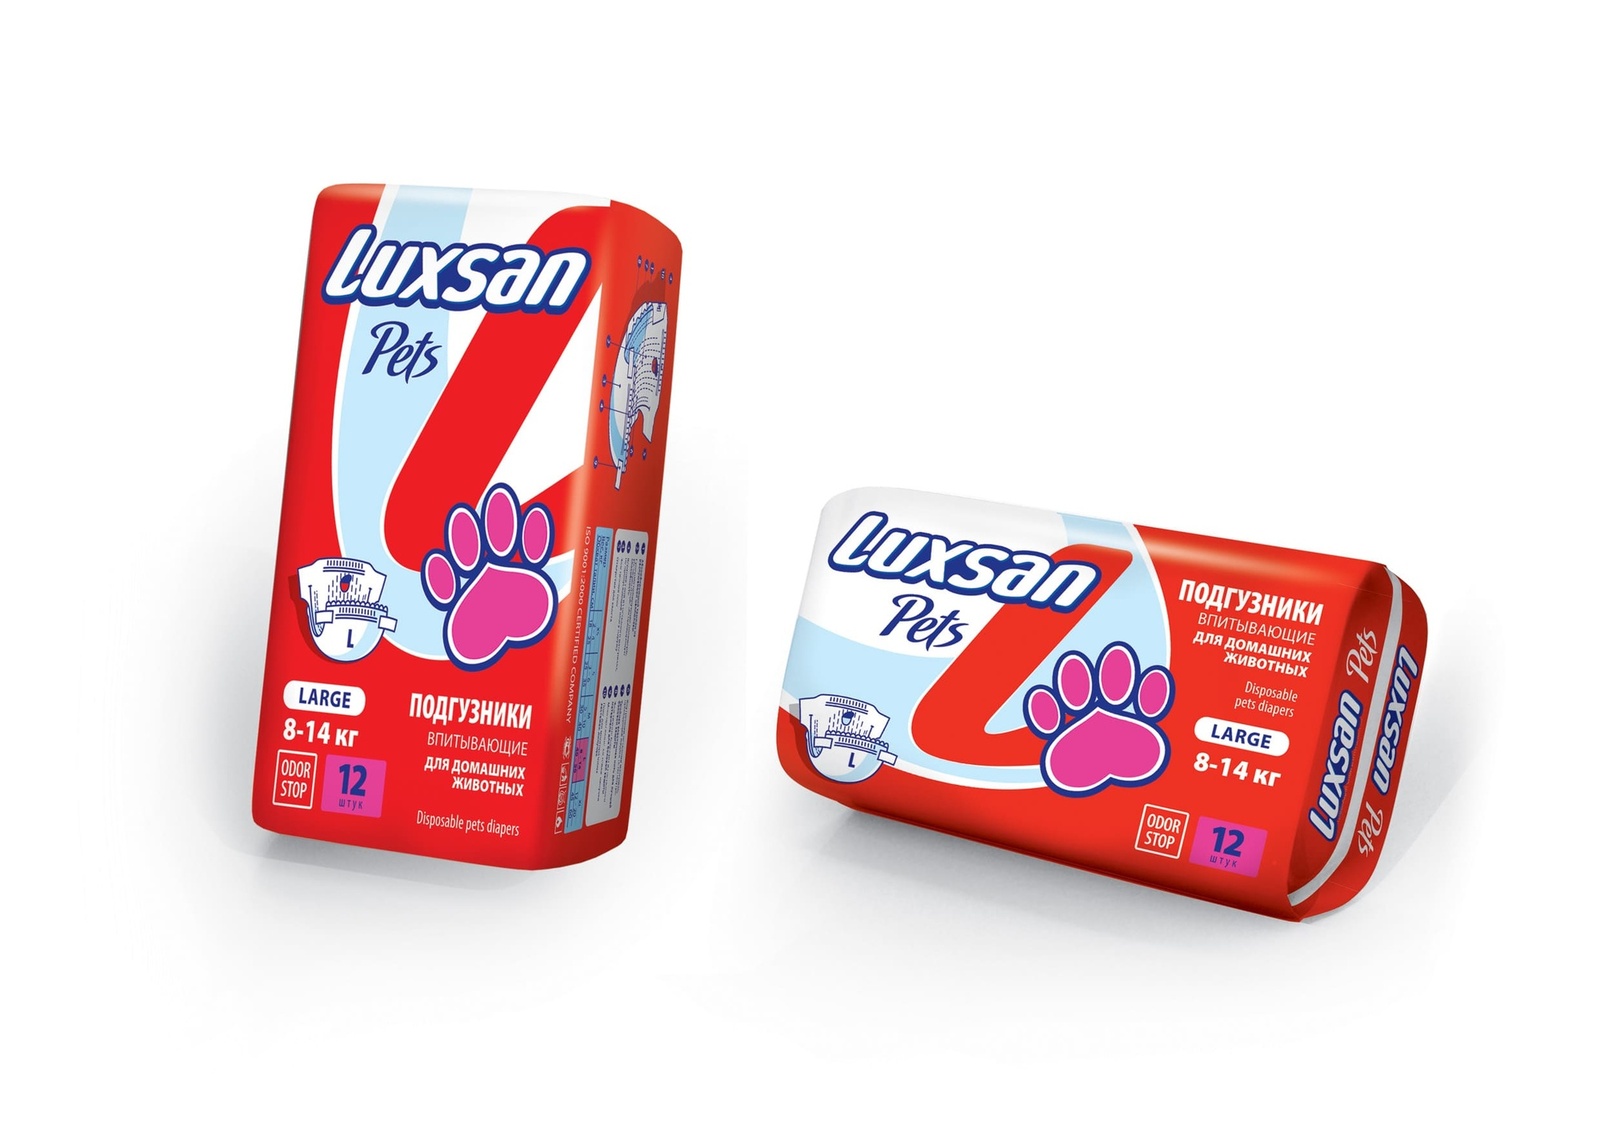 Luxsan подгузники для животных: 8-14 кг, 12 шт. (340 г)